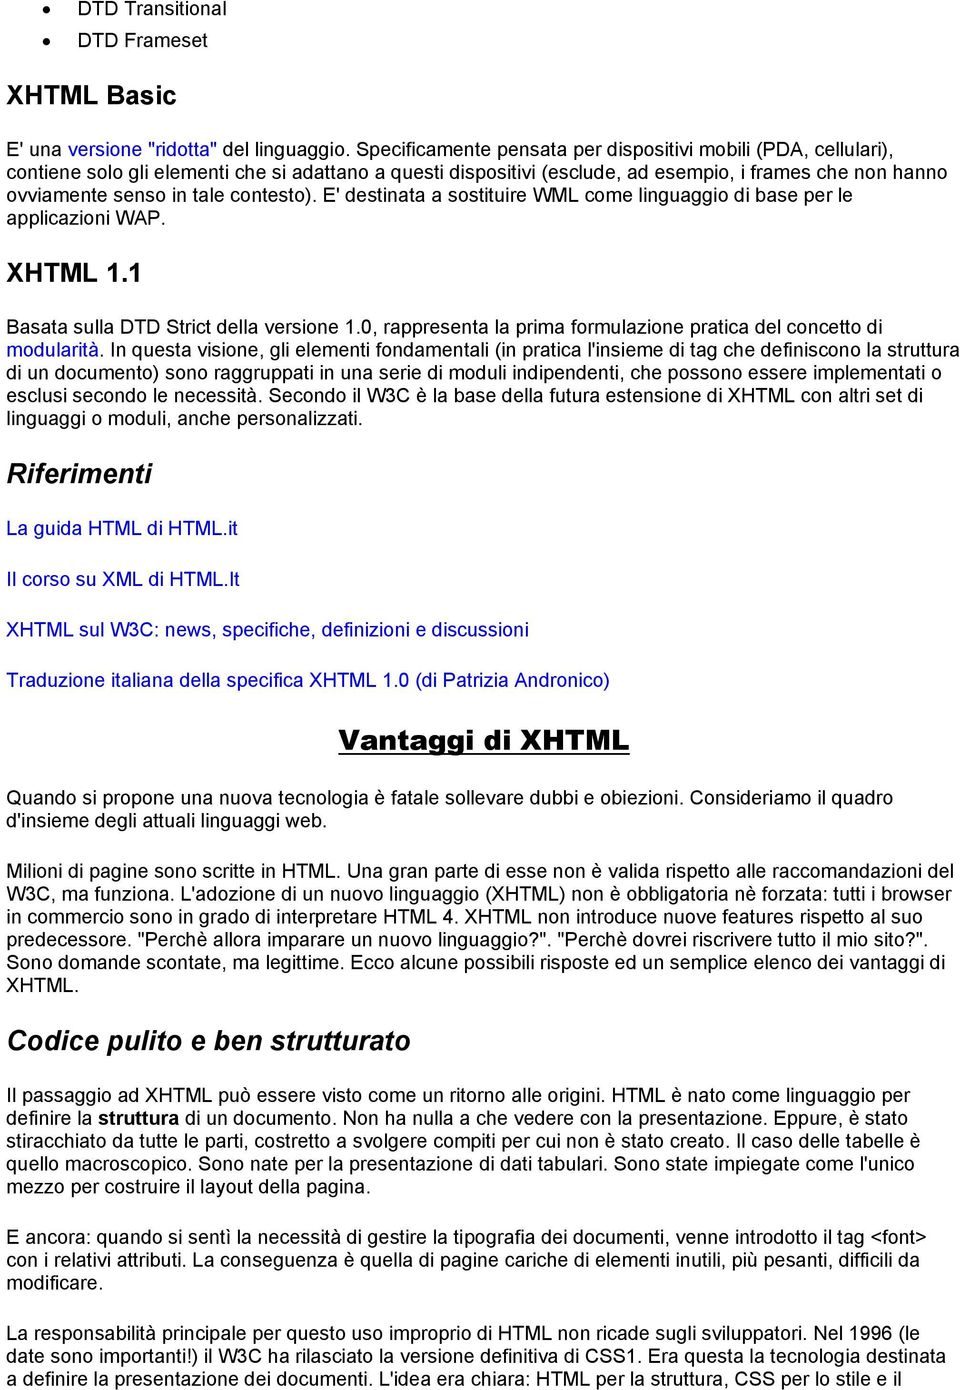 contesto). E' destinata a sostituire WML come linguaggio di base per le applicazioni WAP. XHTML 1.1 Basata sulla DTD Strict della versione 1.